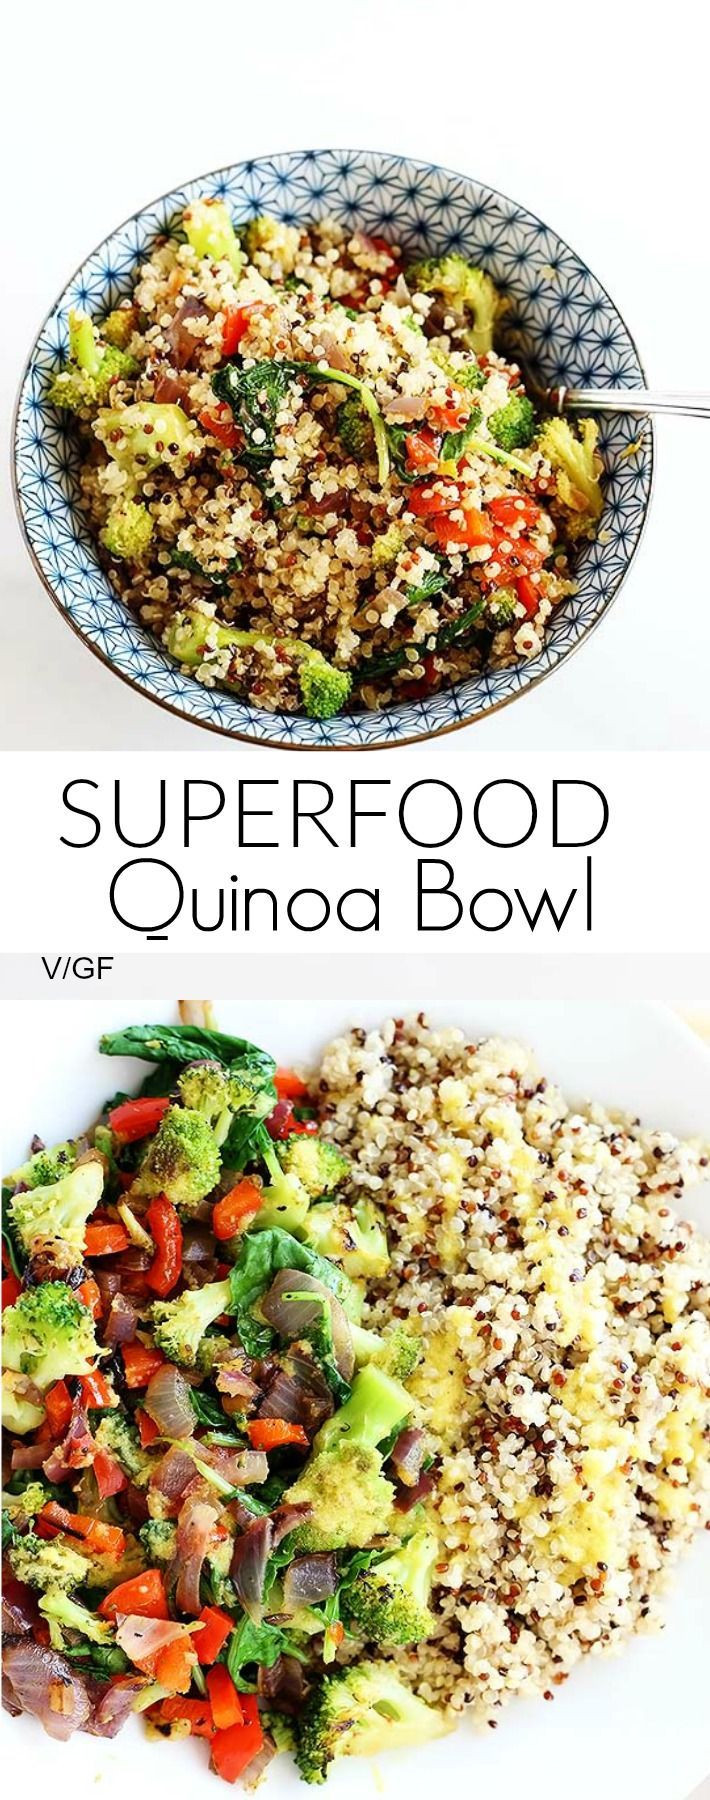 Vegetarian Quinoa Bowl Recipes
 Superfood Quinoa Bowl Recipe